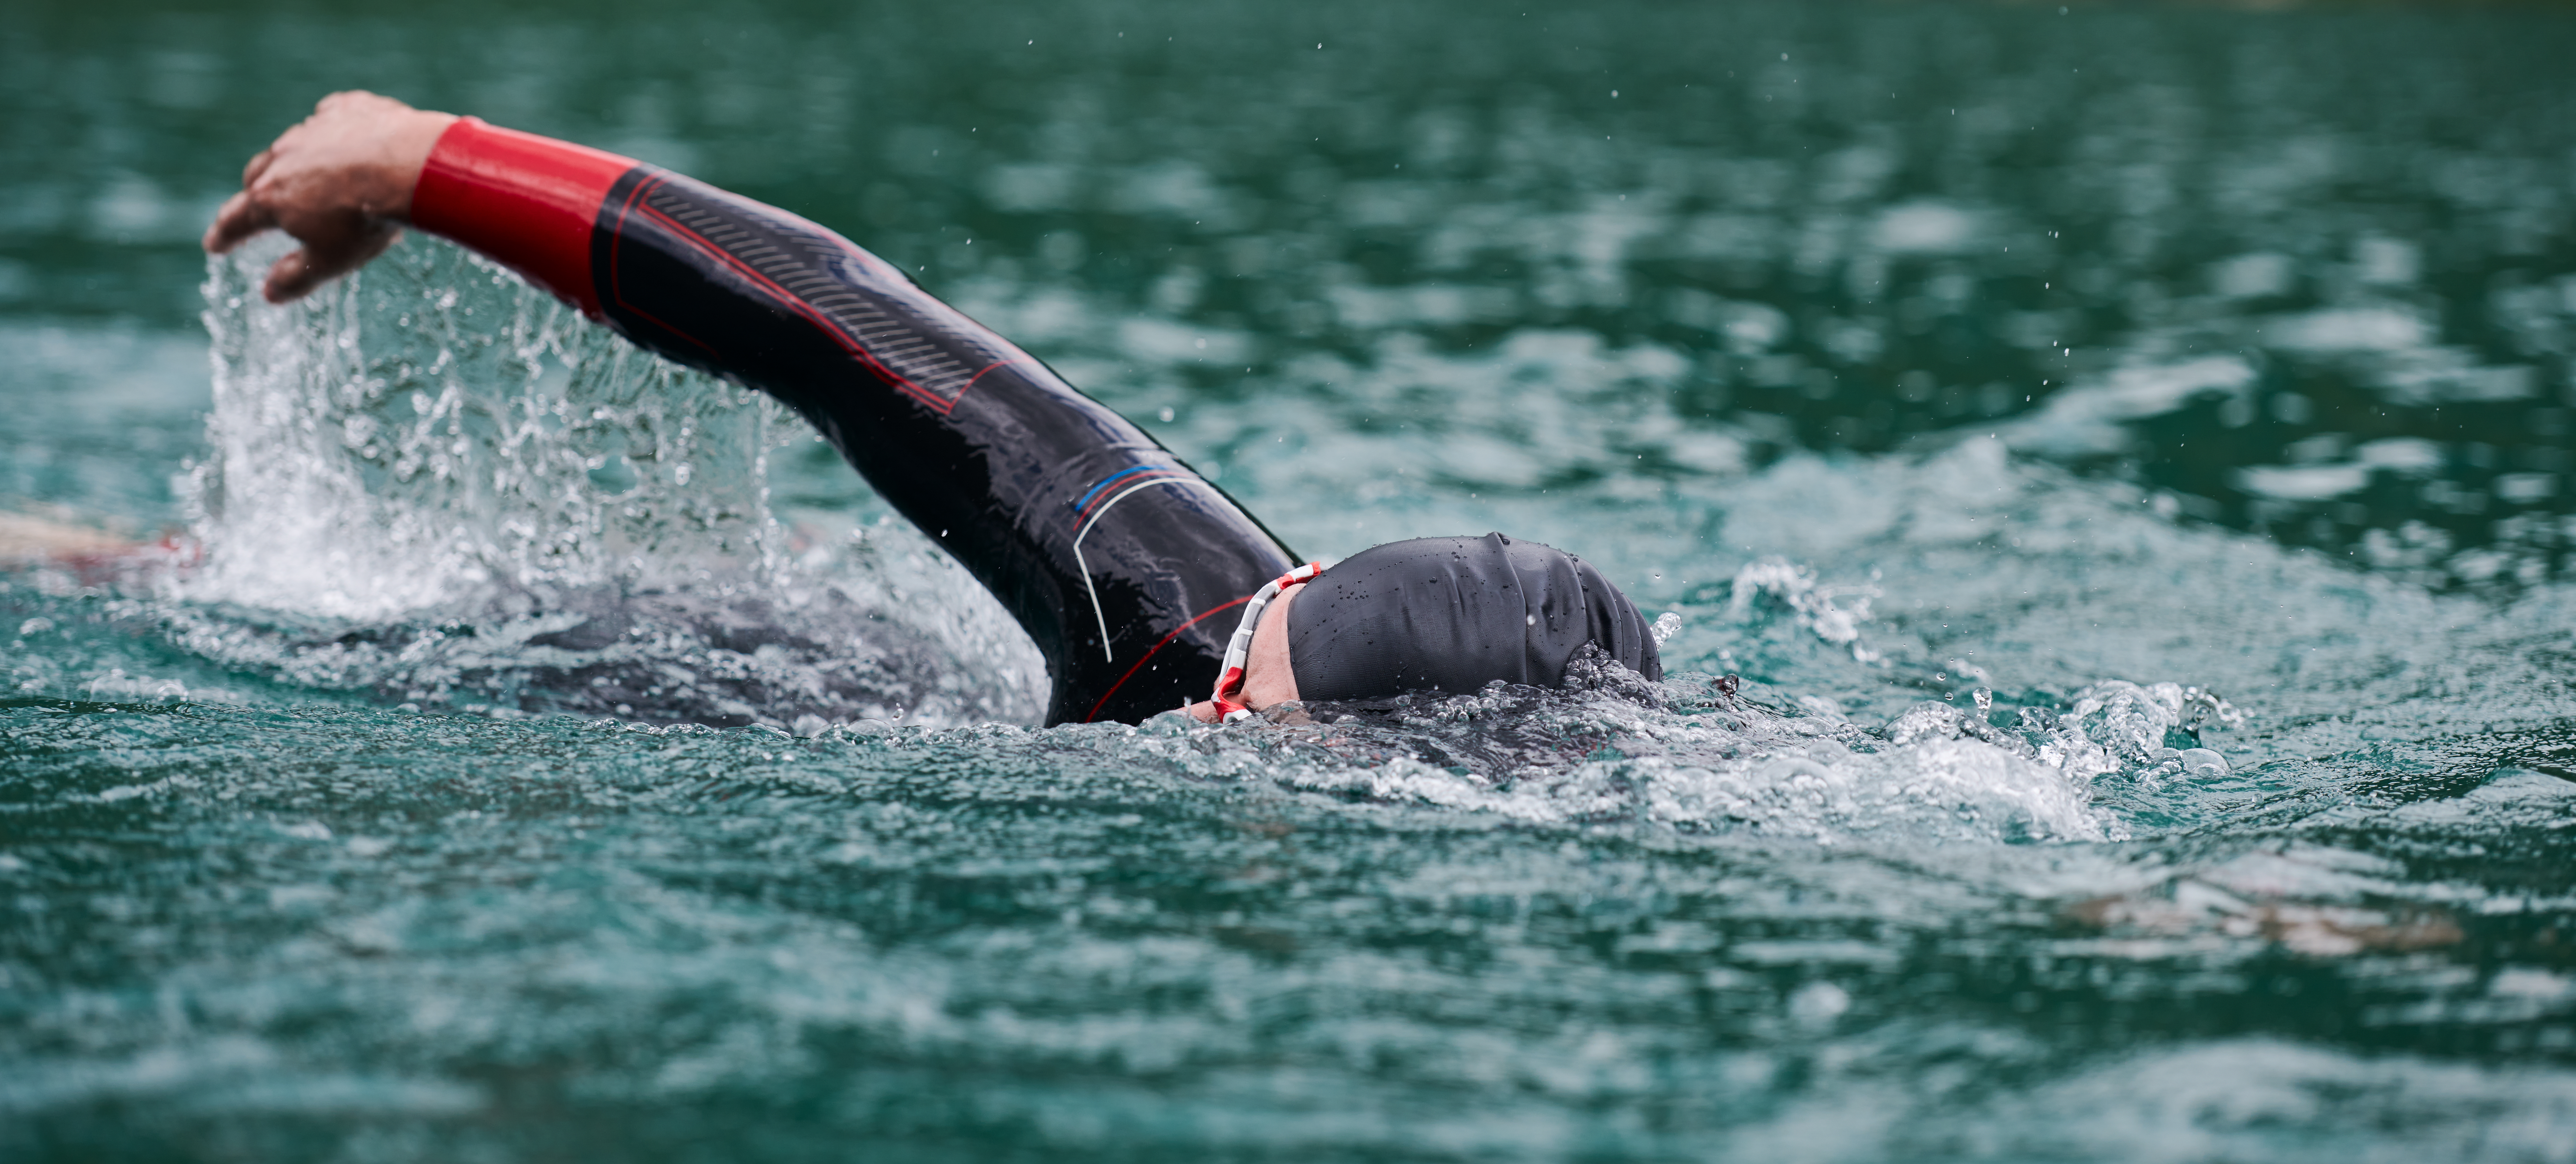 Na tym ekscytującym obrazku możemy zobaczyć mężczyznę w pełnym skupieniu, pływającego przez turkusowe wody podczas zawodów triathlonowych. Jego determinacja i siła są widoczne w każdym ruchu, podkreślając nie tylko wyzwanie, jakim jest trójboje, ale także piękno poświęcenia w dążeniu do osiągnięcia celu.